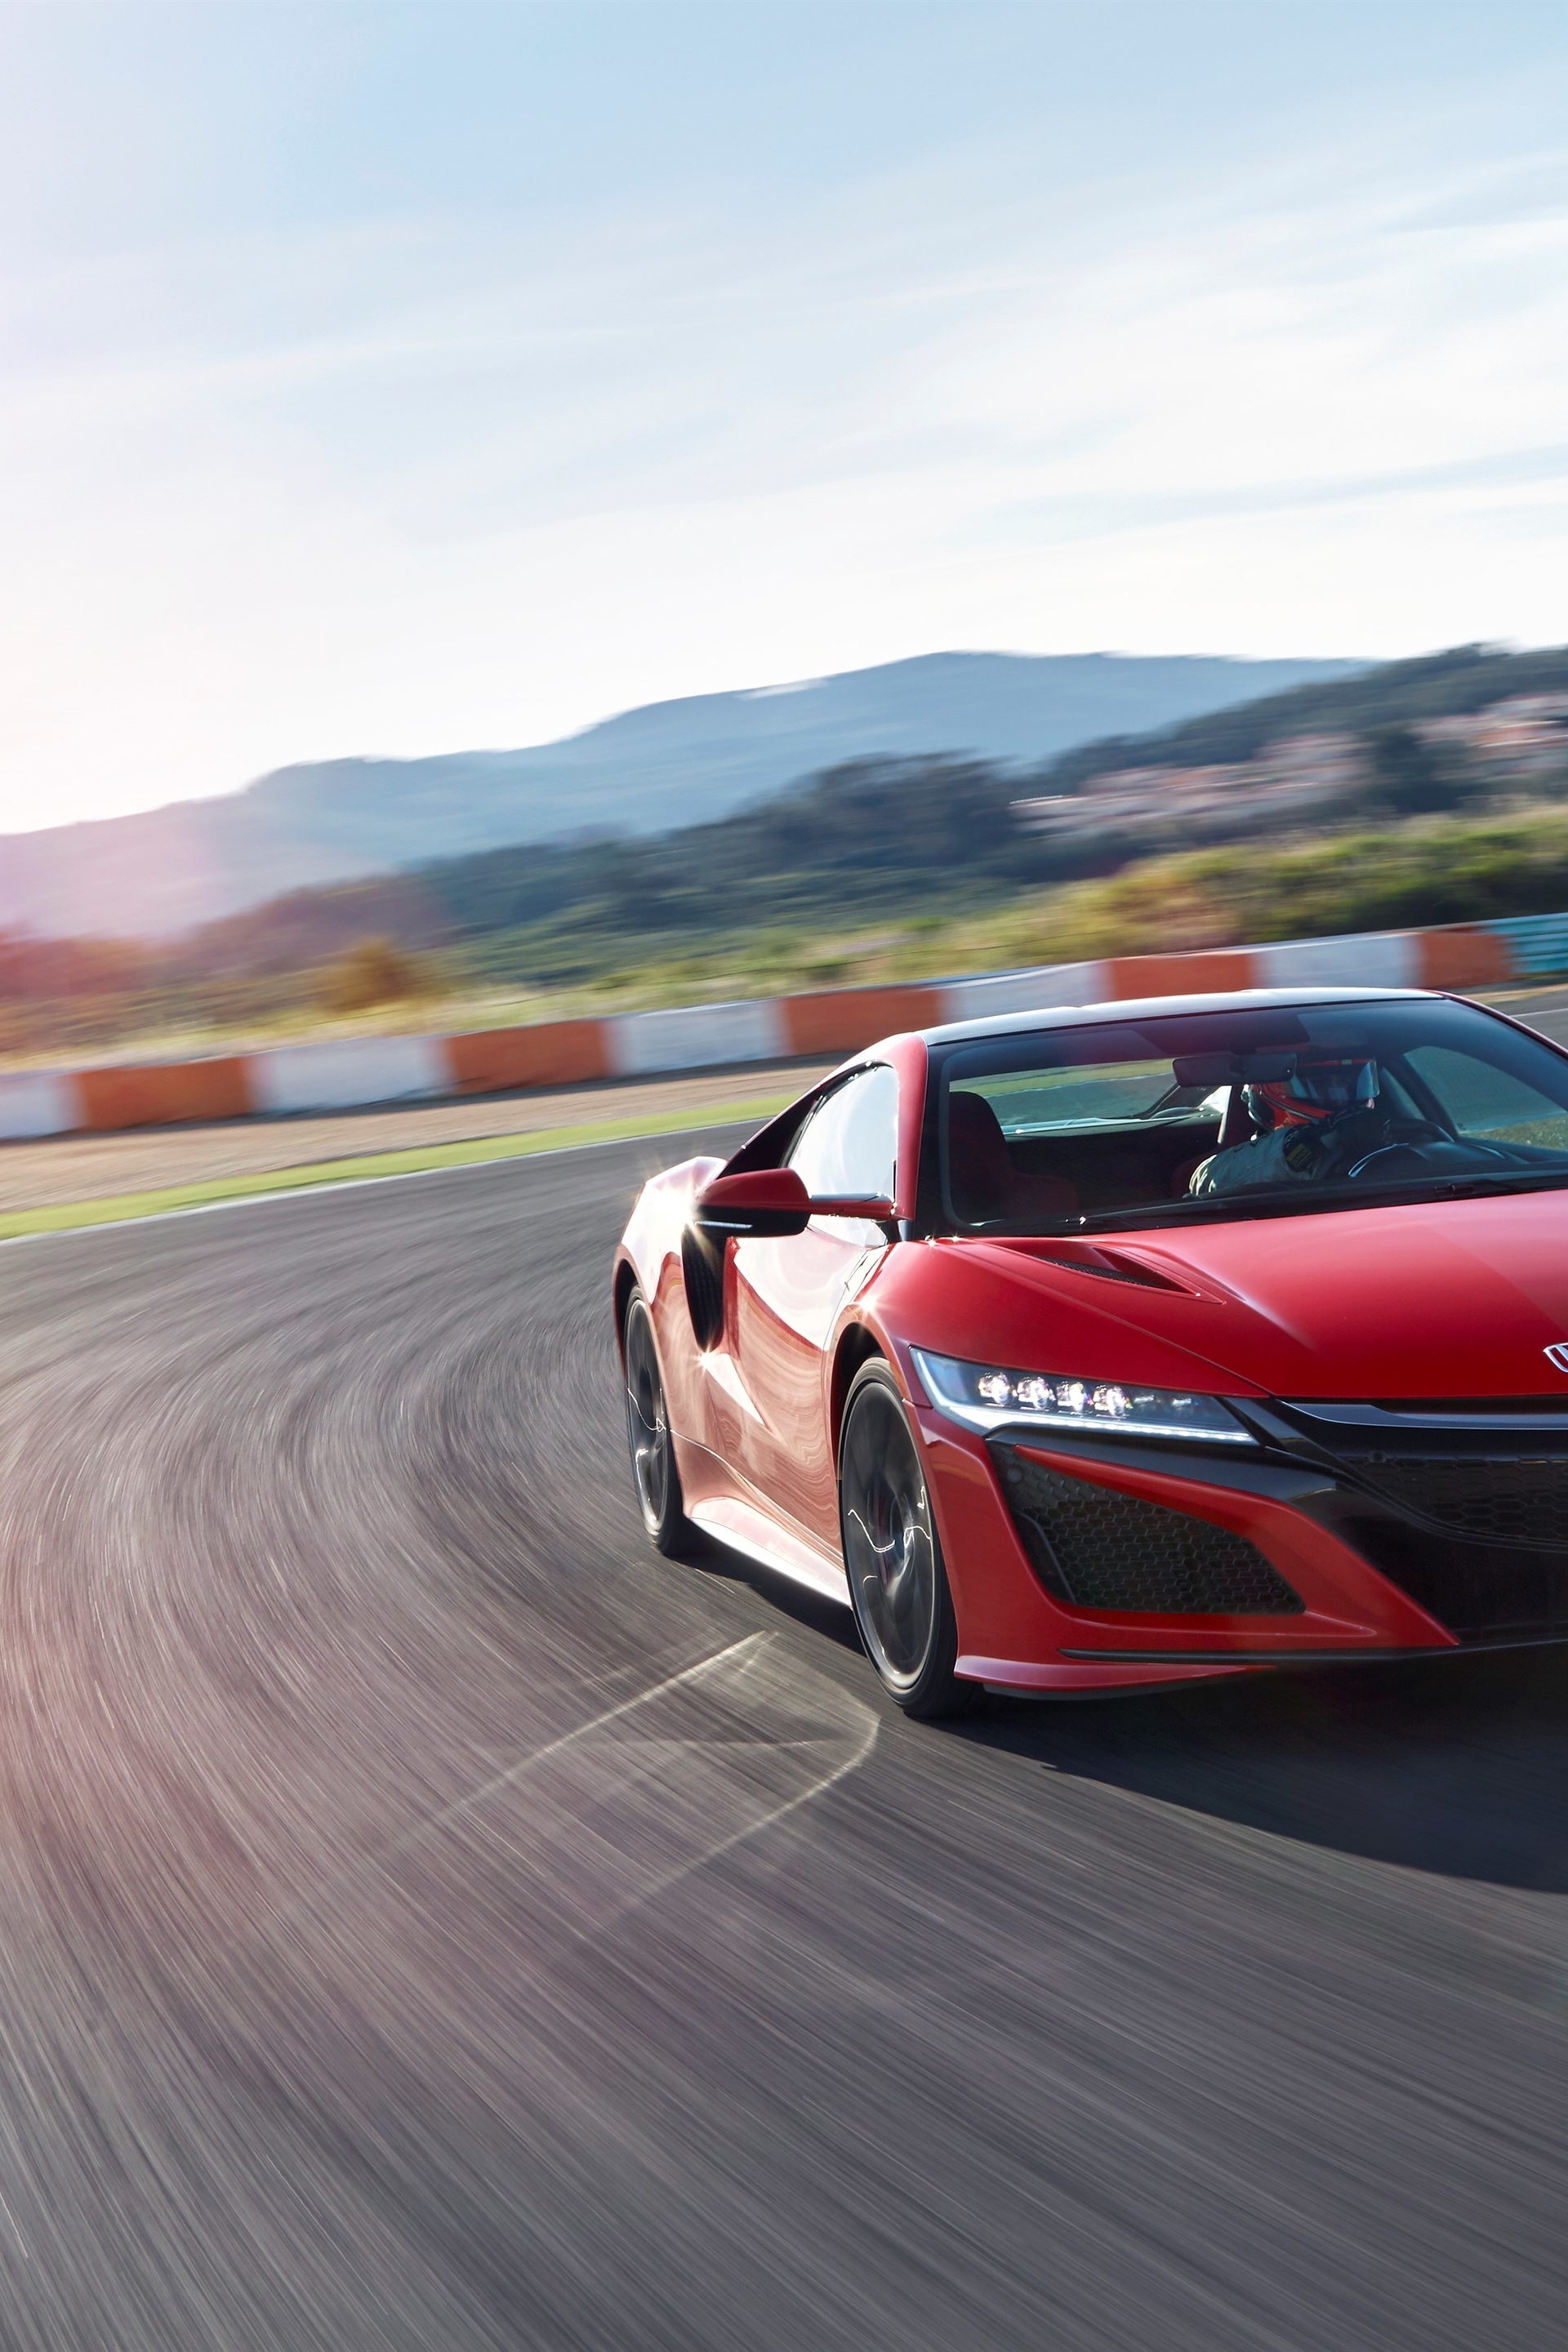 Картинка: Honda NSX, Red, красный, спортивный, автомобиль, трасса, дорога, асфальт, скорость